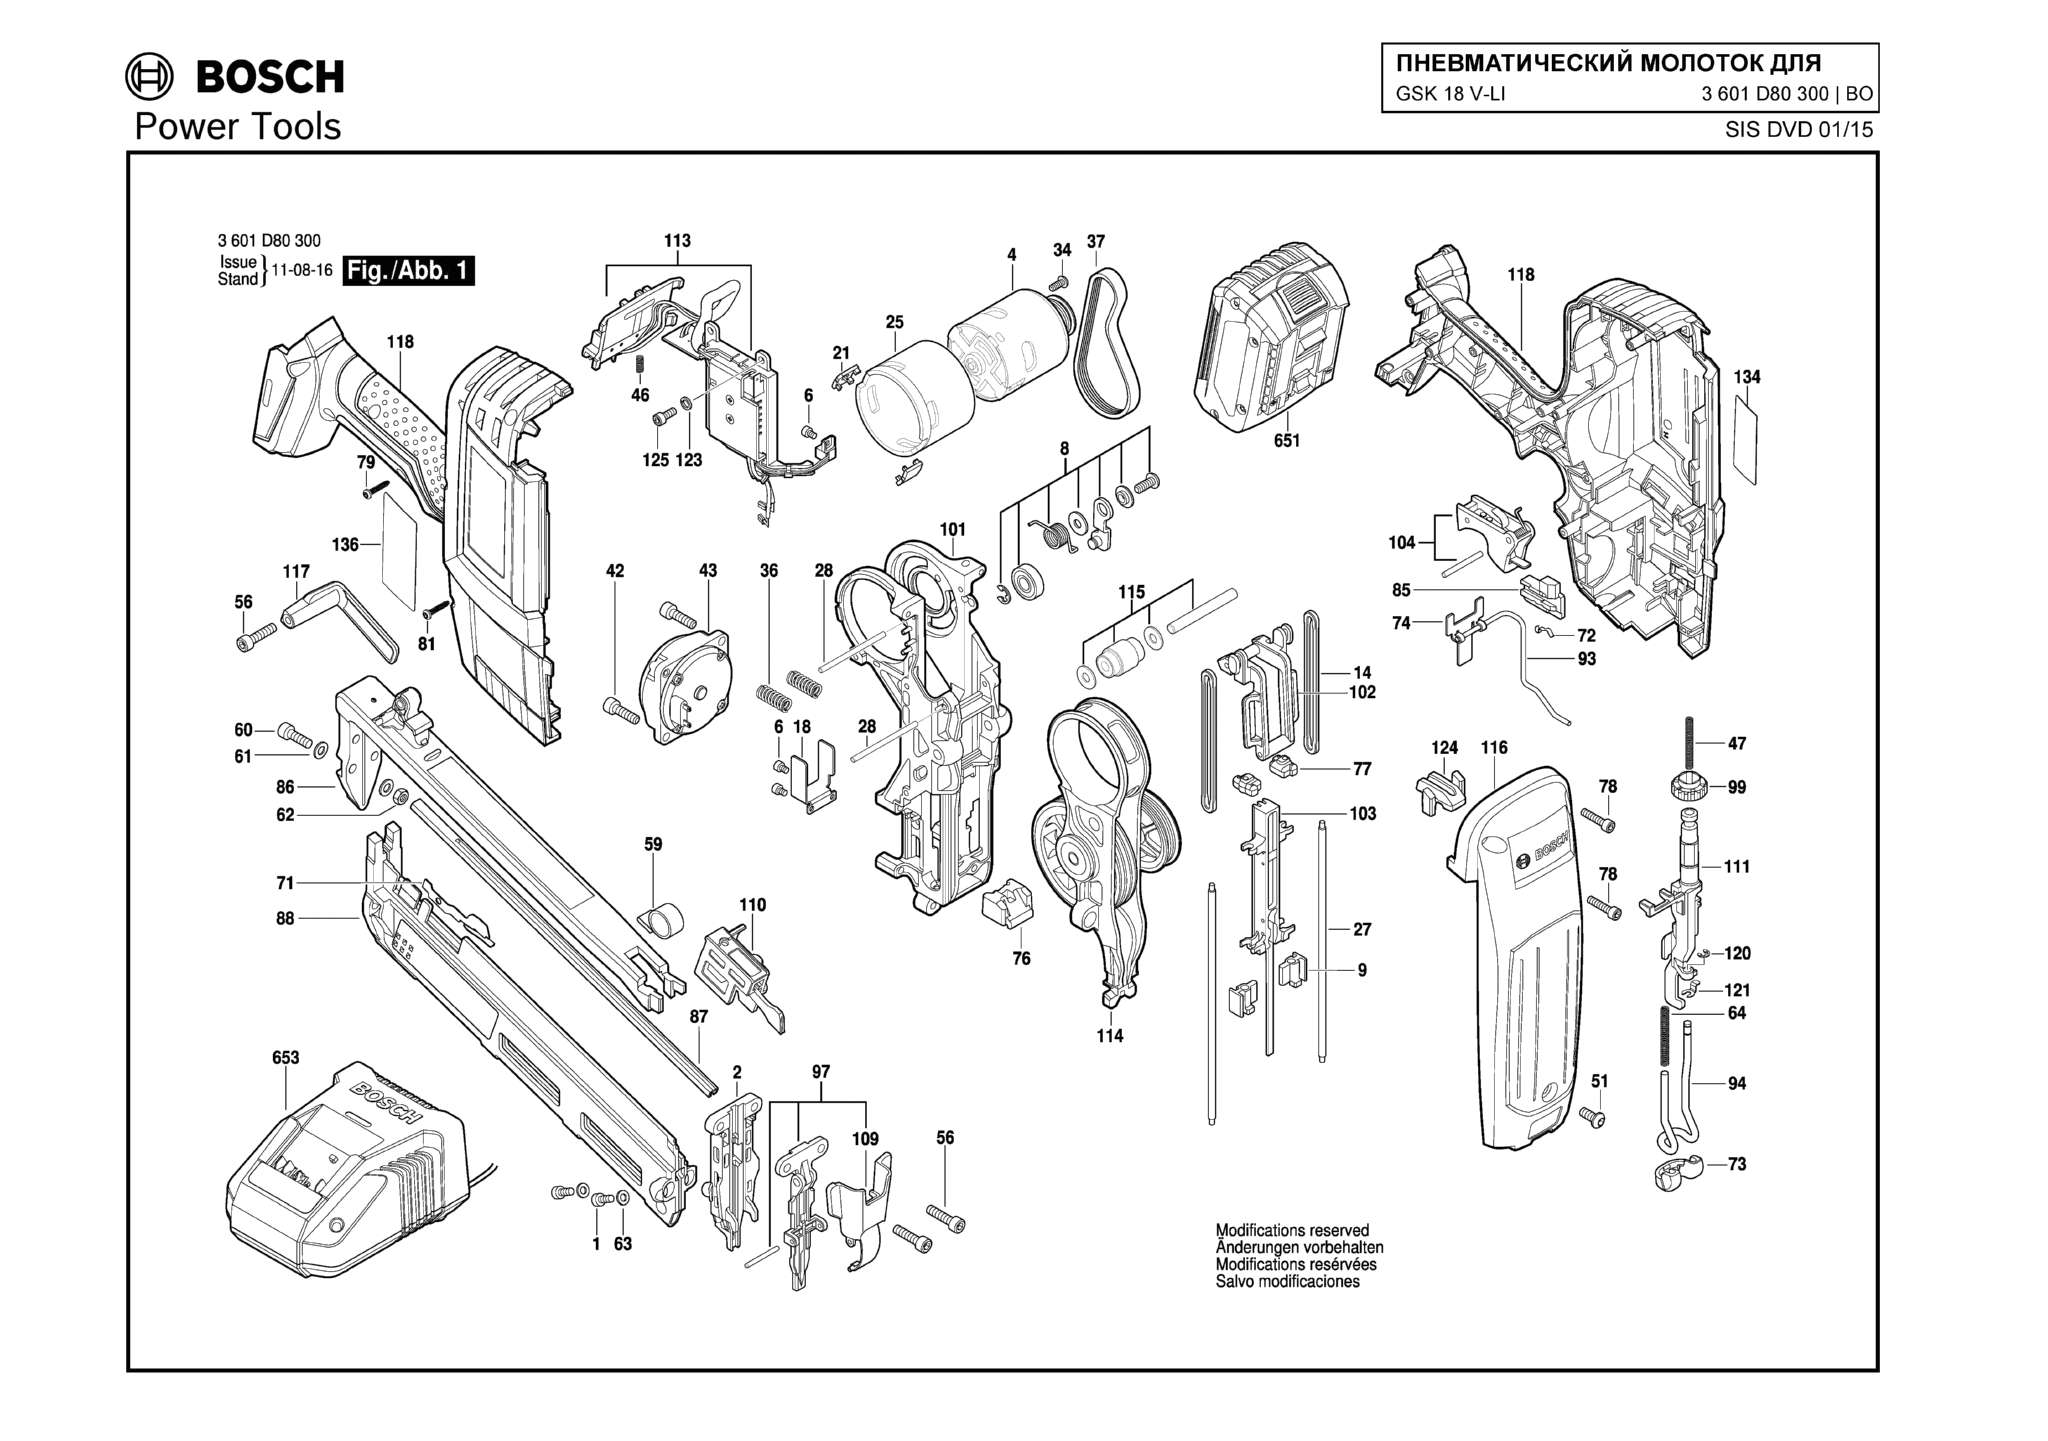 Запчасти, схема и деталировка Bosch GSK 18 V-LI (ТИП 3601D80300)